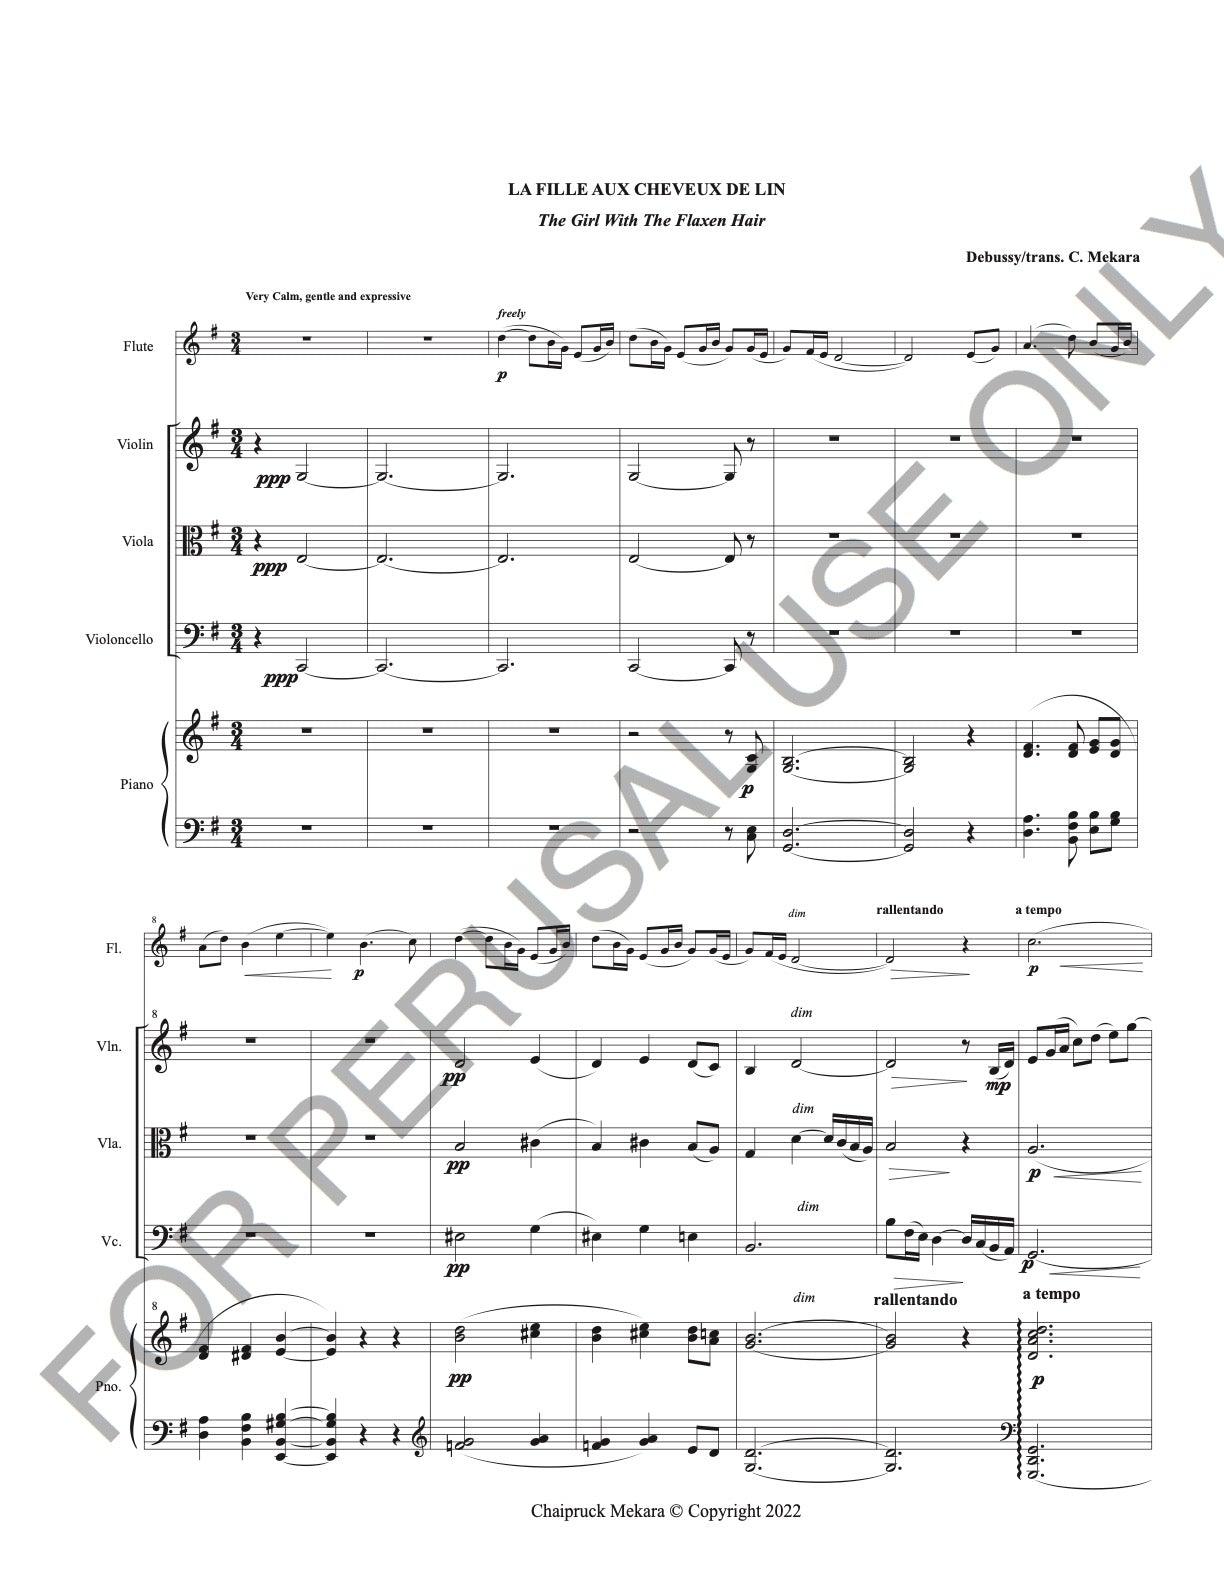 La Fille Aux Cheveux De Lin - Flute Violin Viola Cello and Piano - ChaipruckMekara